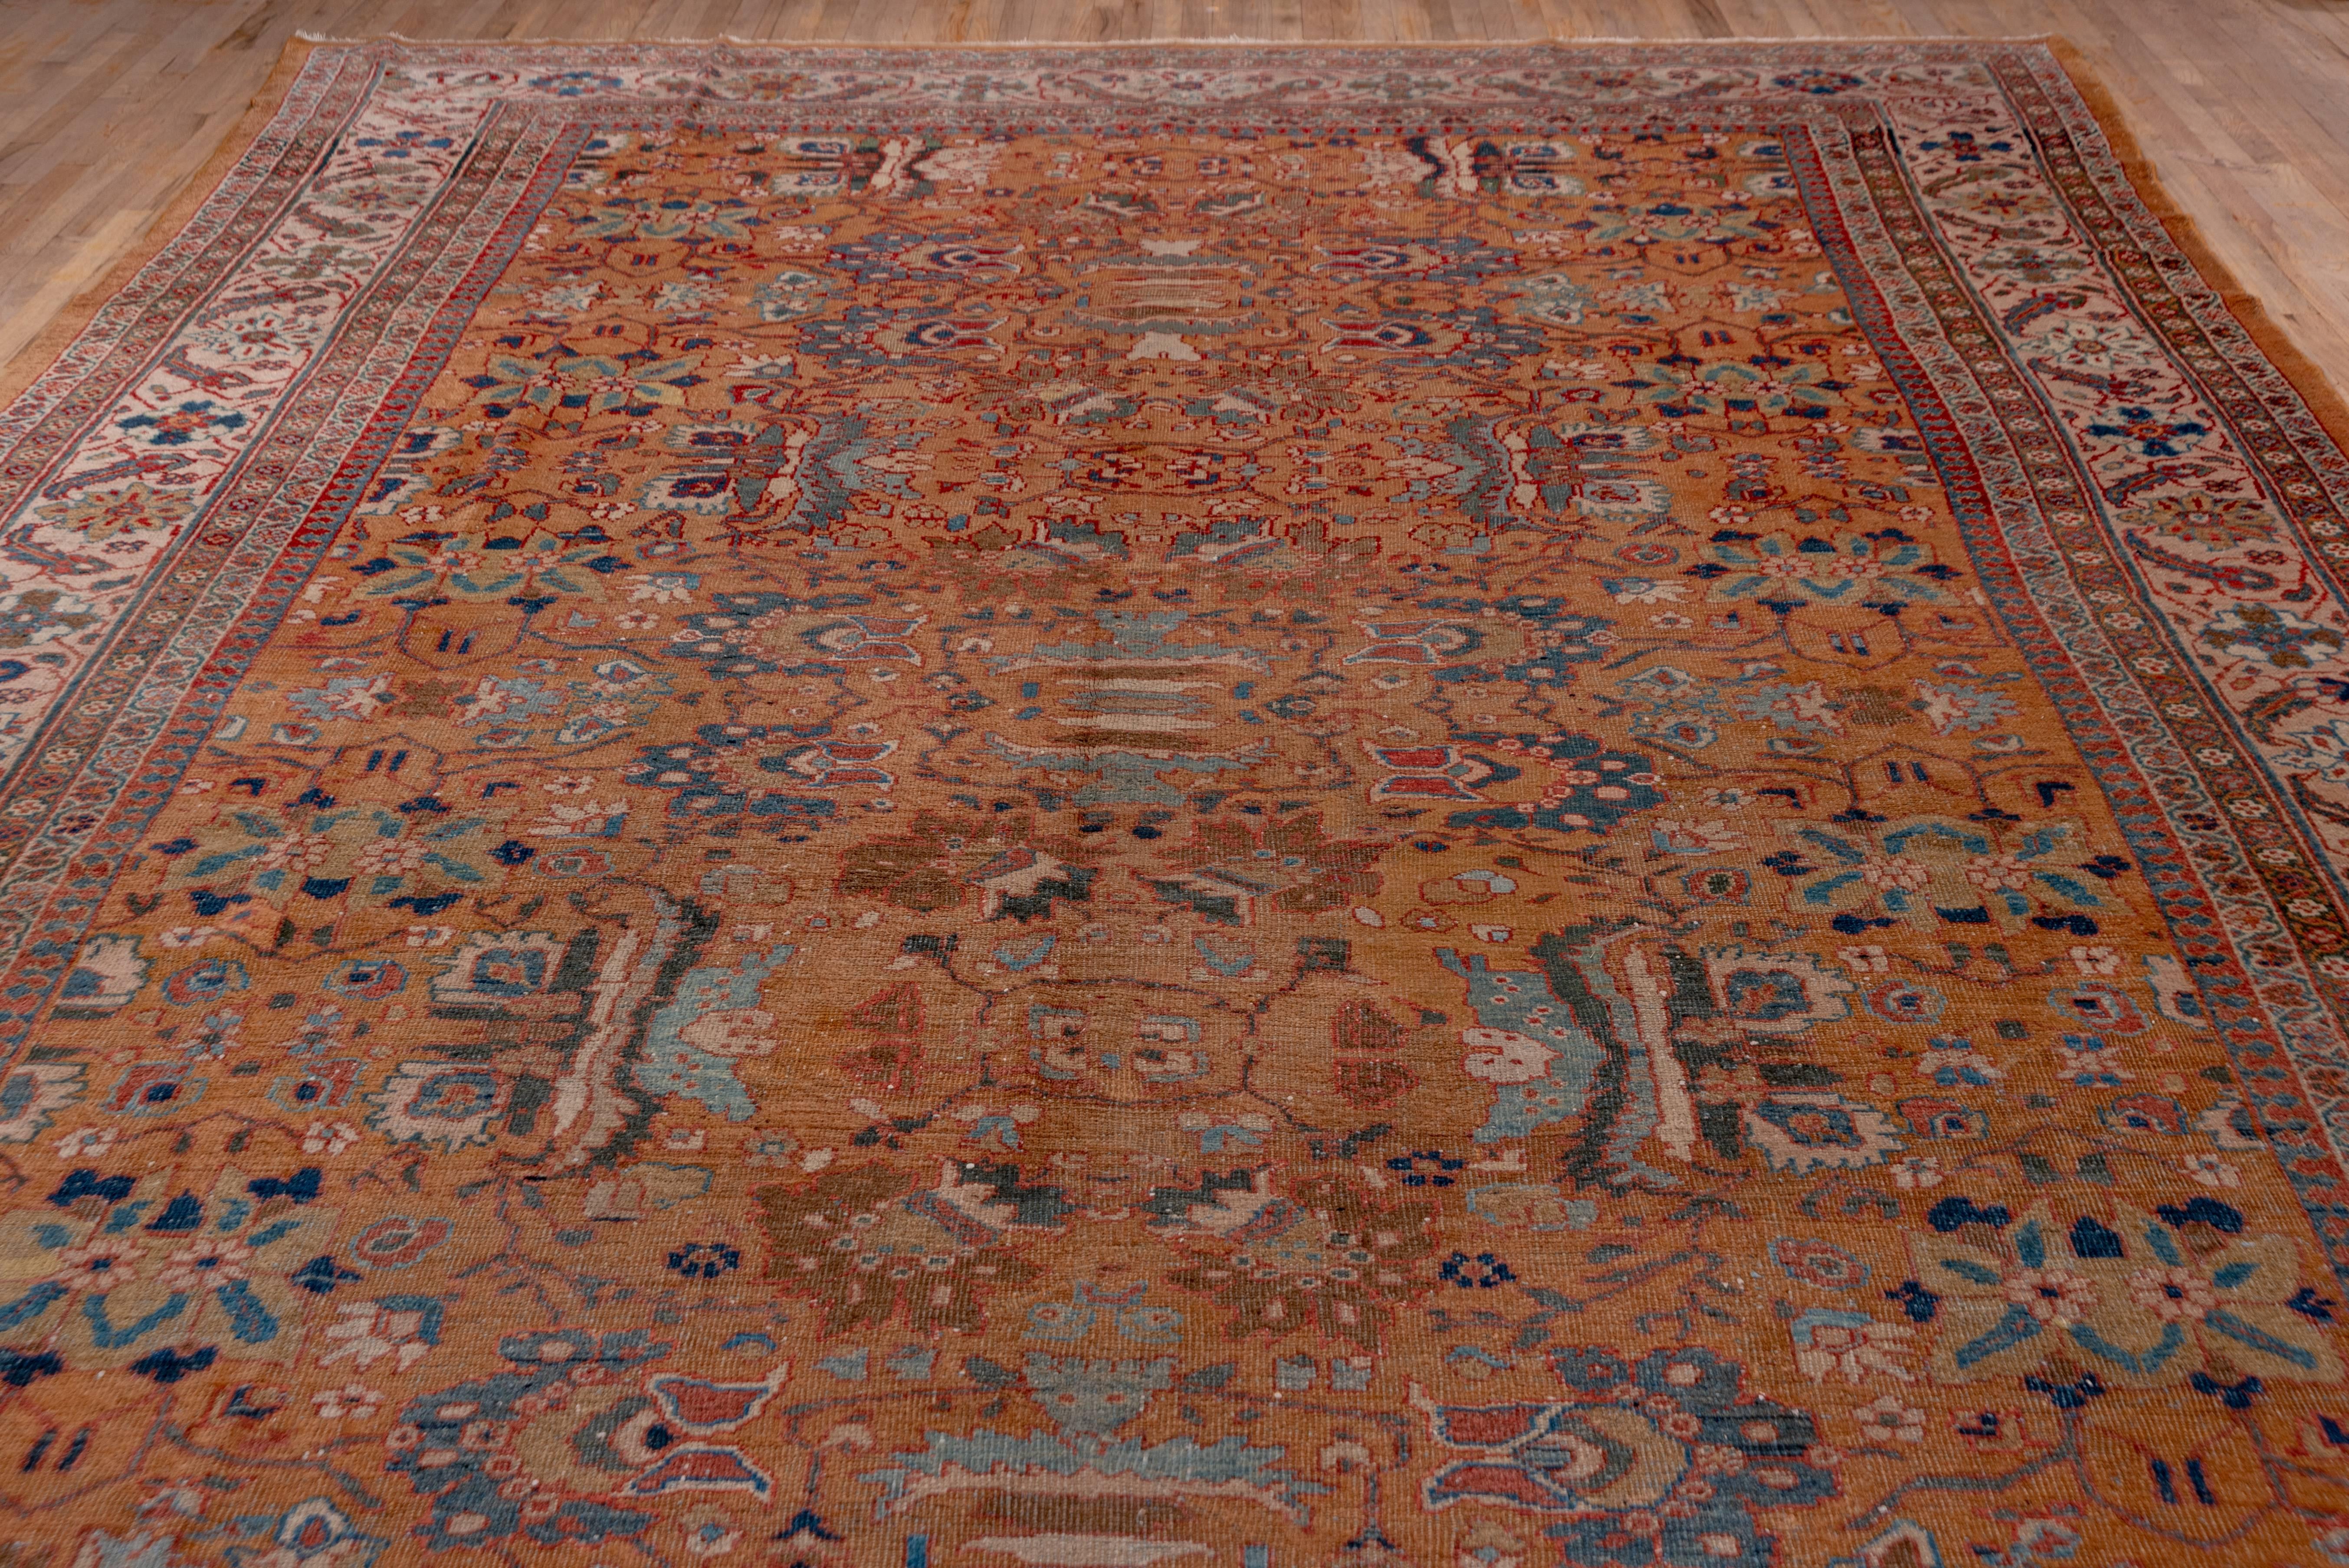 Persian Antique Sultanabad Carpet, circa 1900s